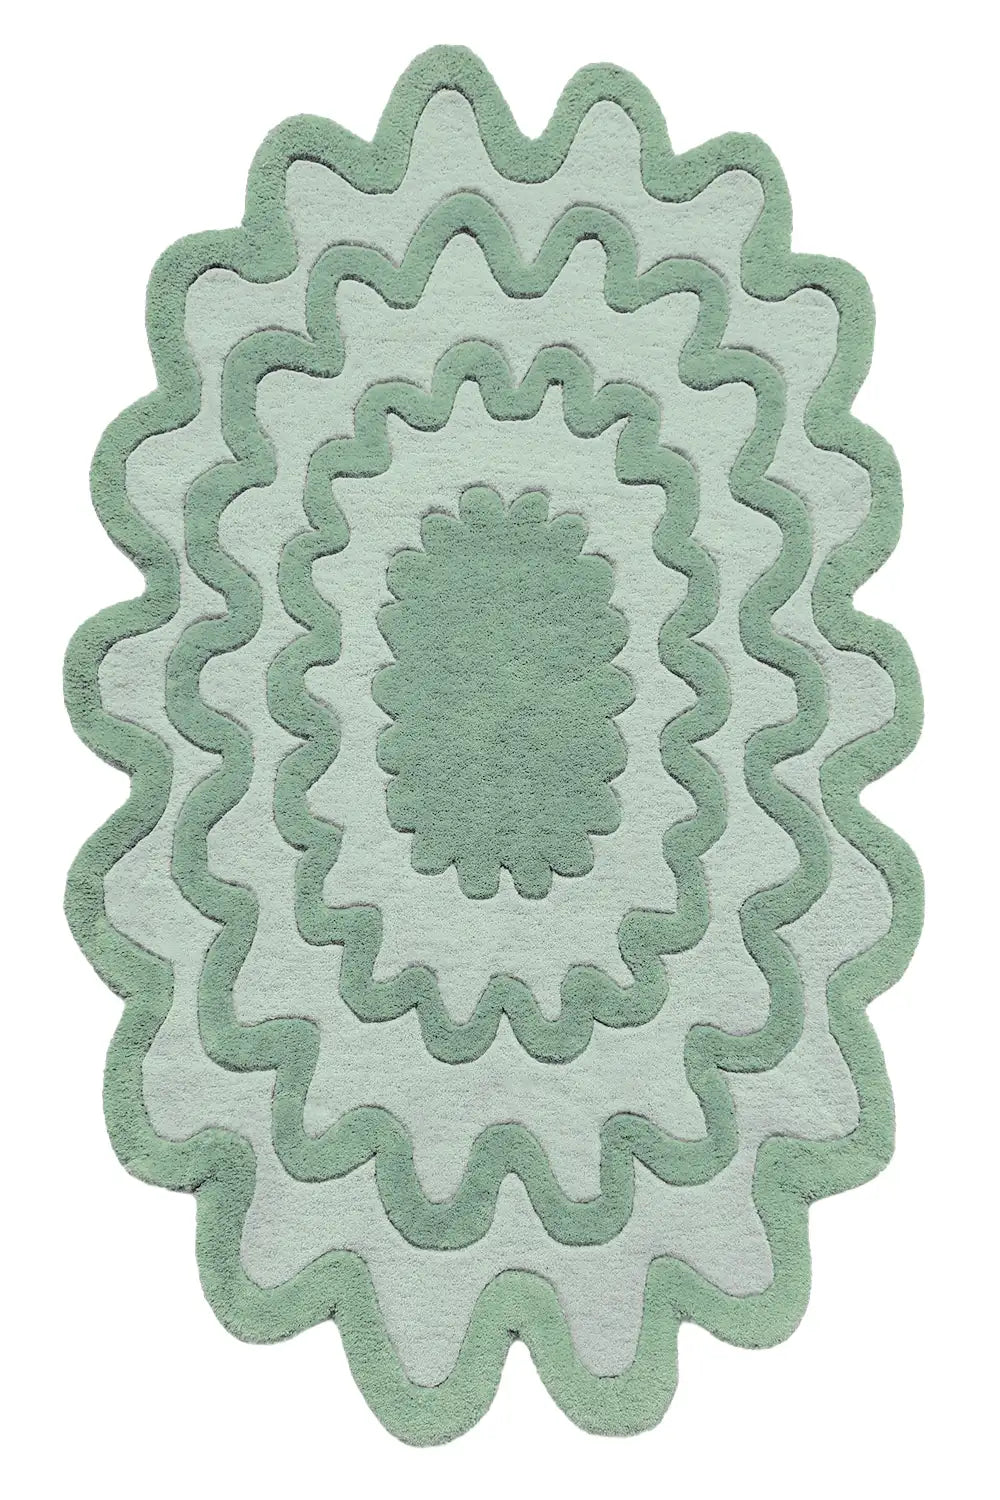 Spiral Circular Wool Rugs in Ivory140x140cm (Circle)